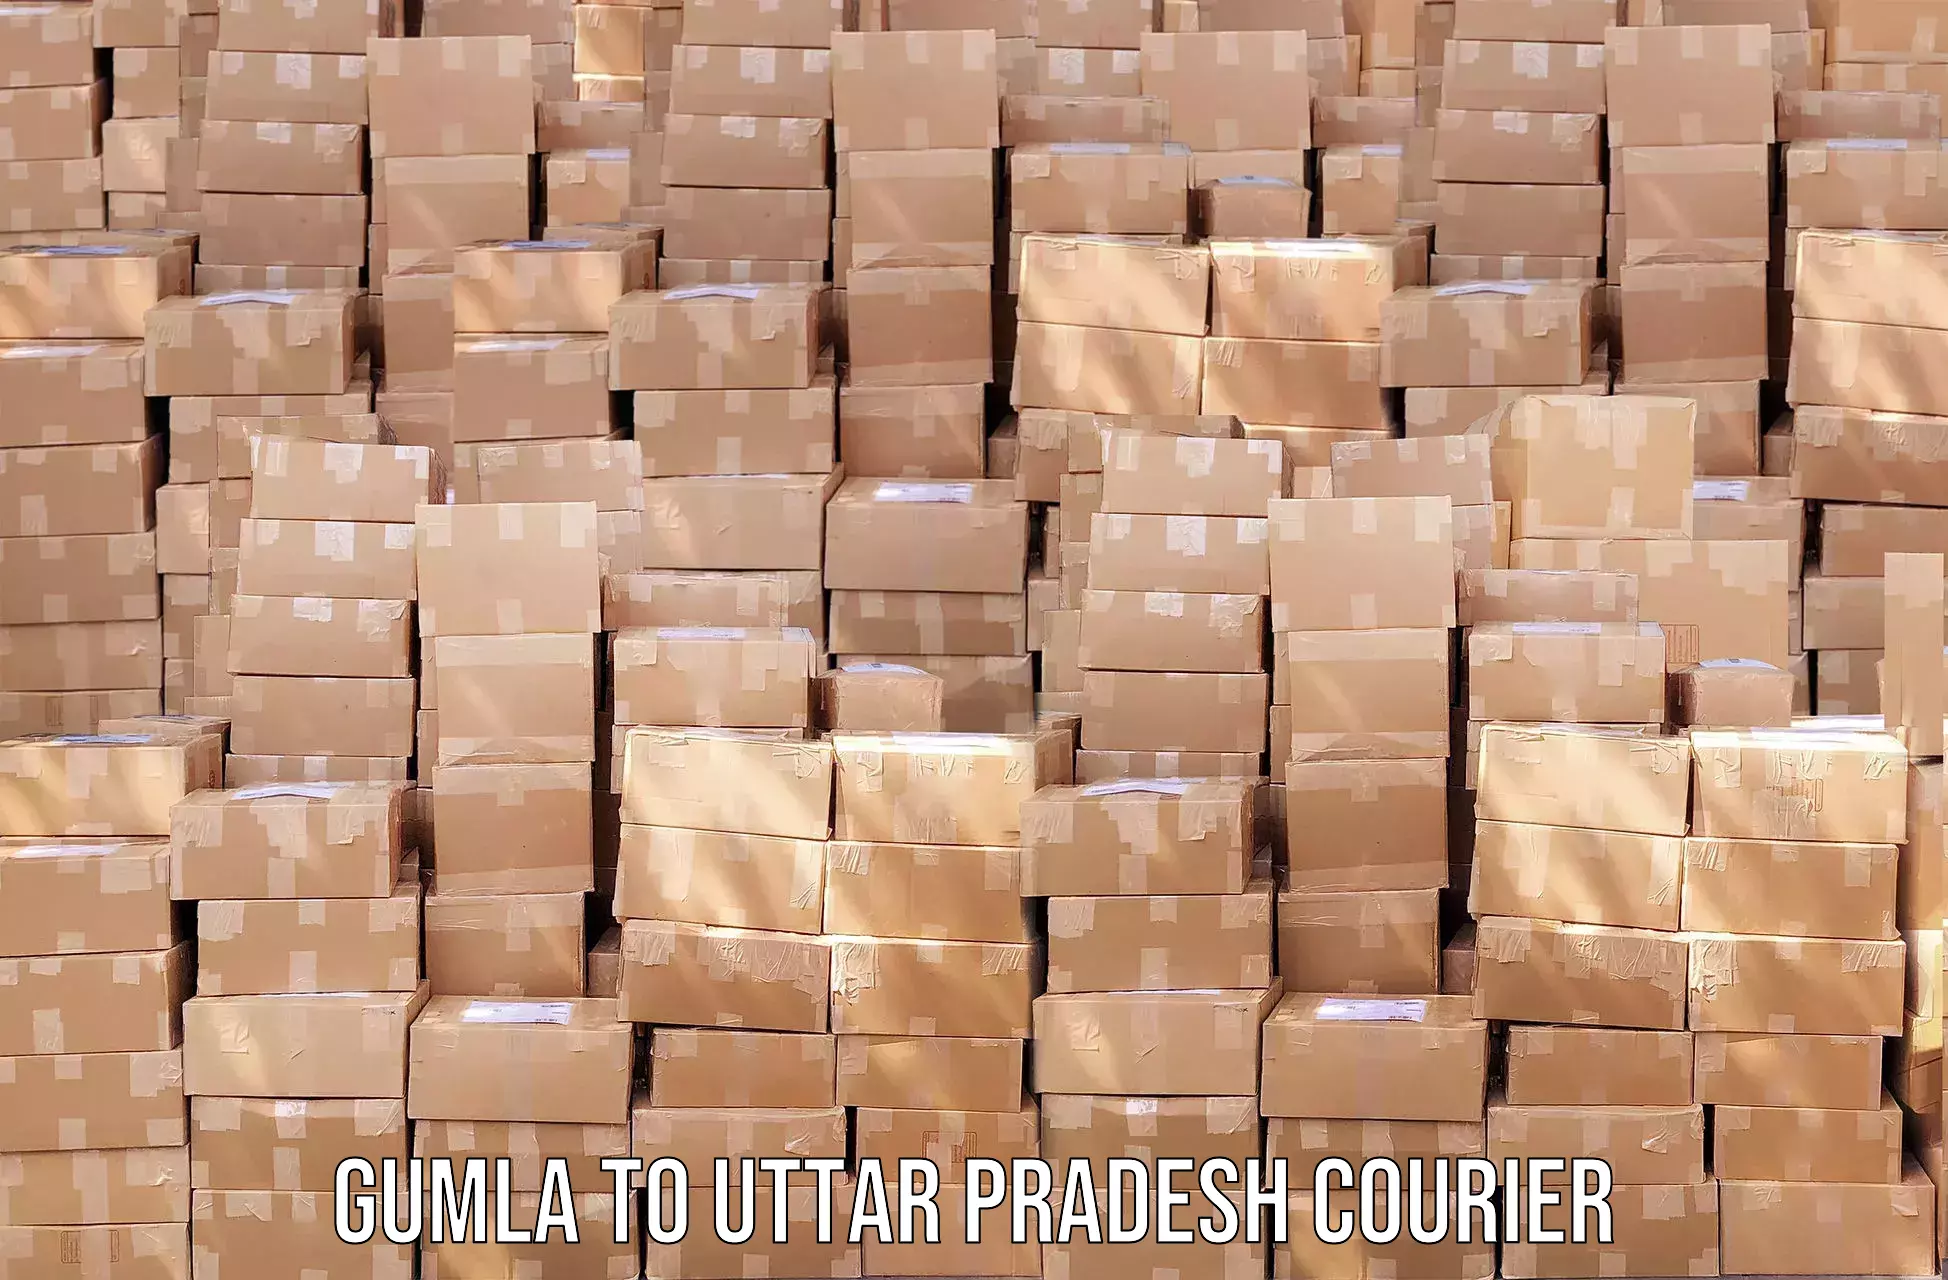 24-hour courier service Gumla to Mishrikh